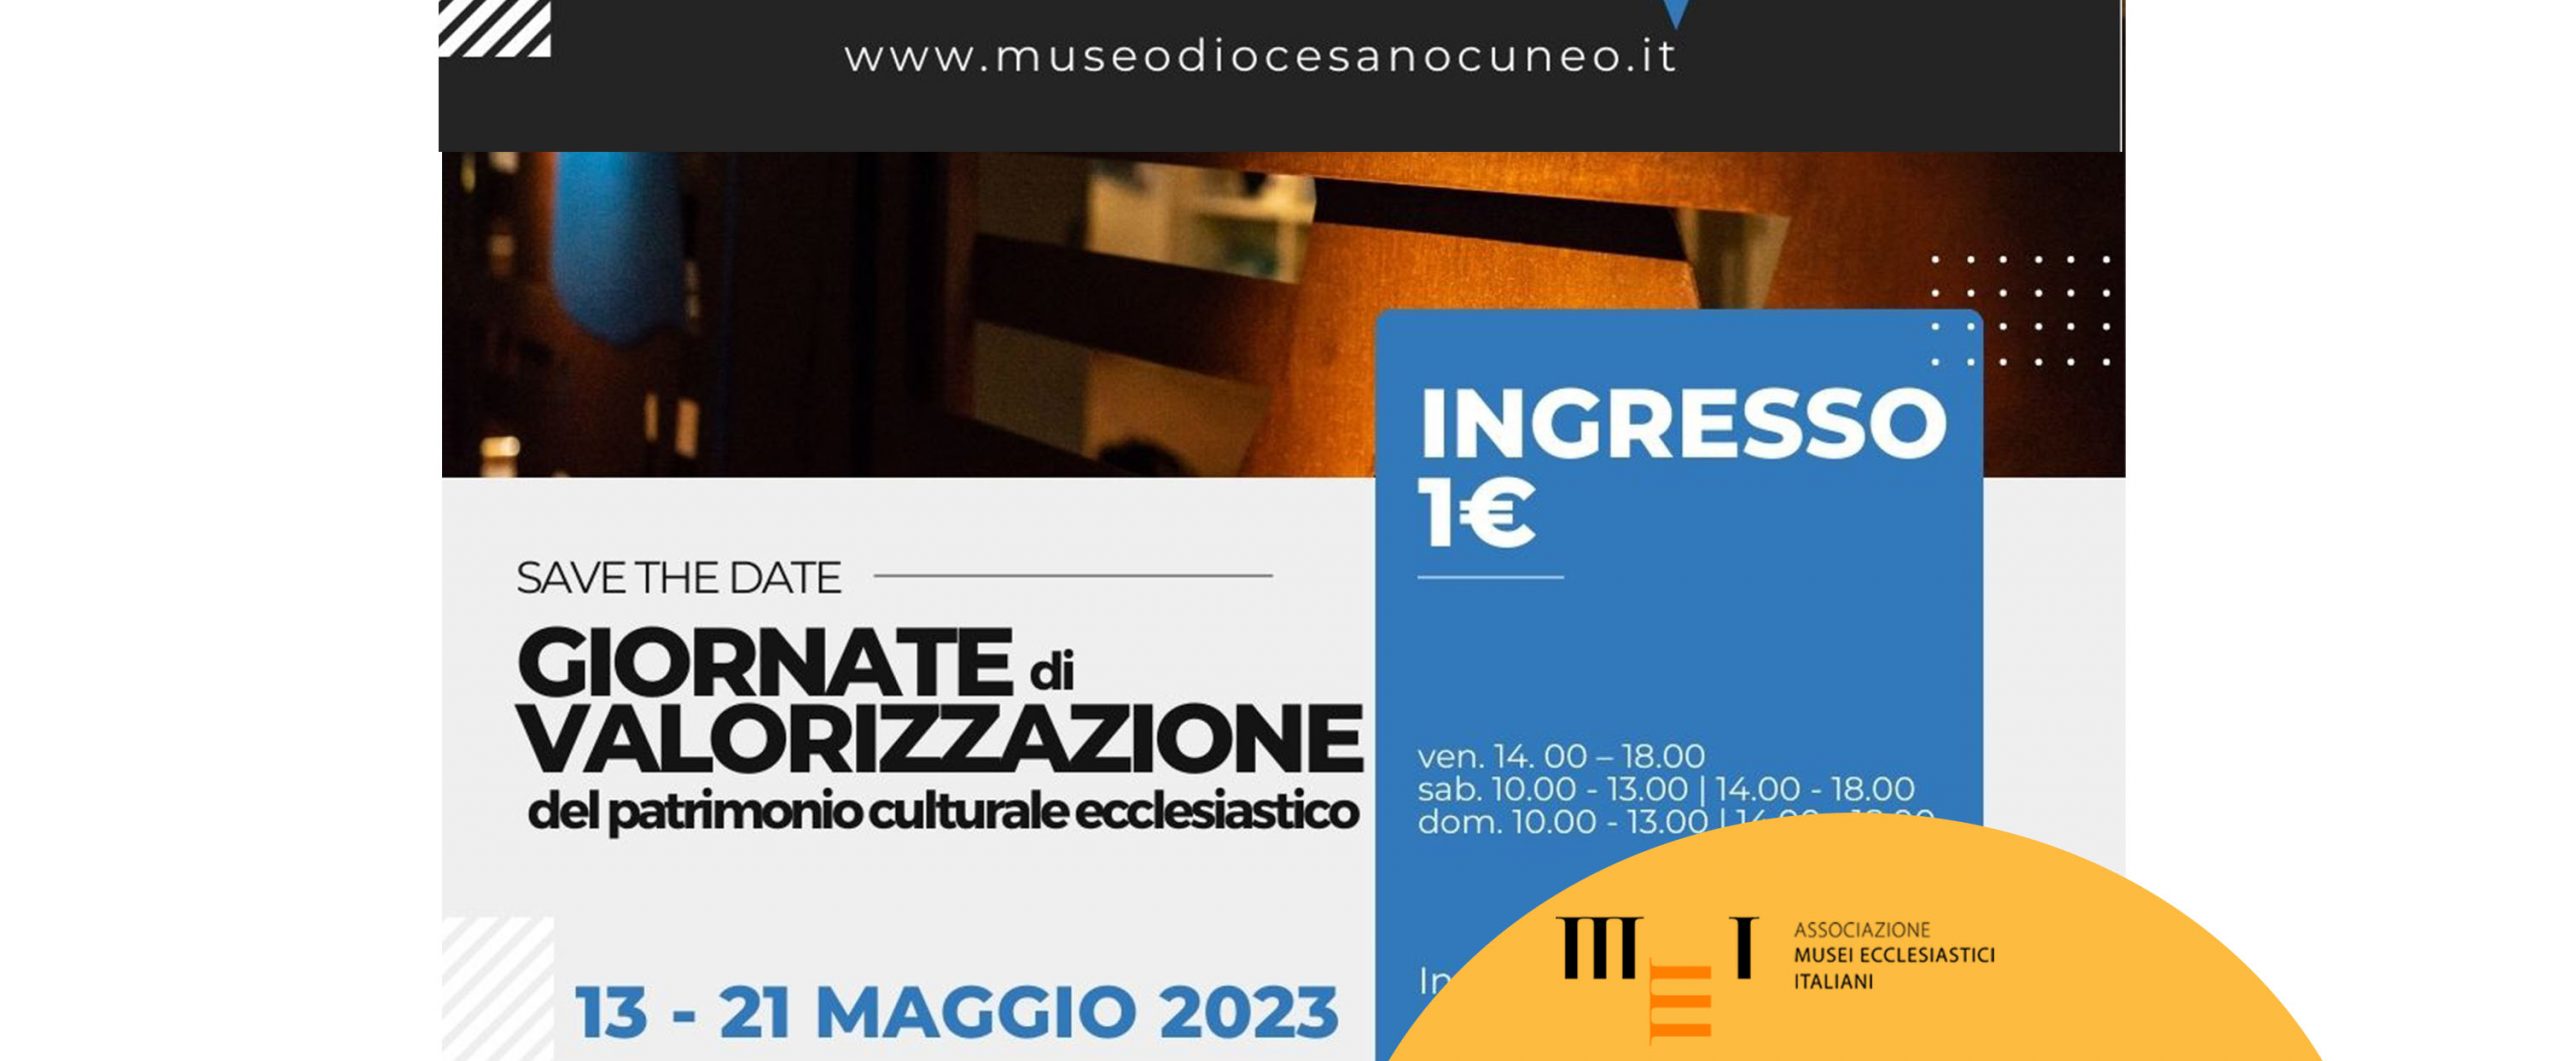 Giornate di valorizzazione del patrimonio ecclesiastico 2023 - Cuneo